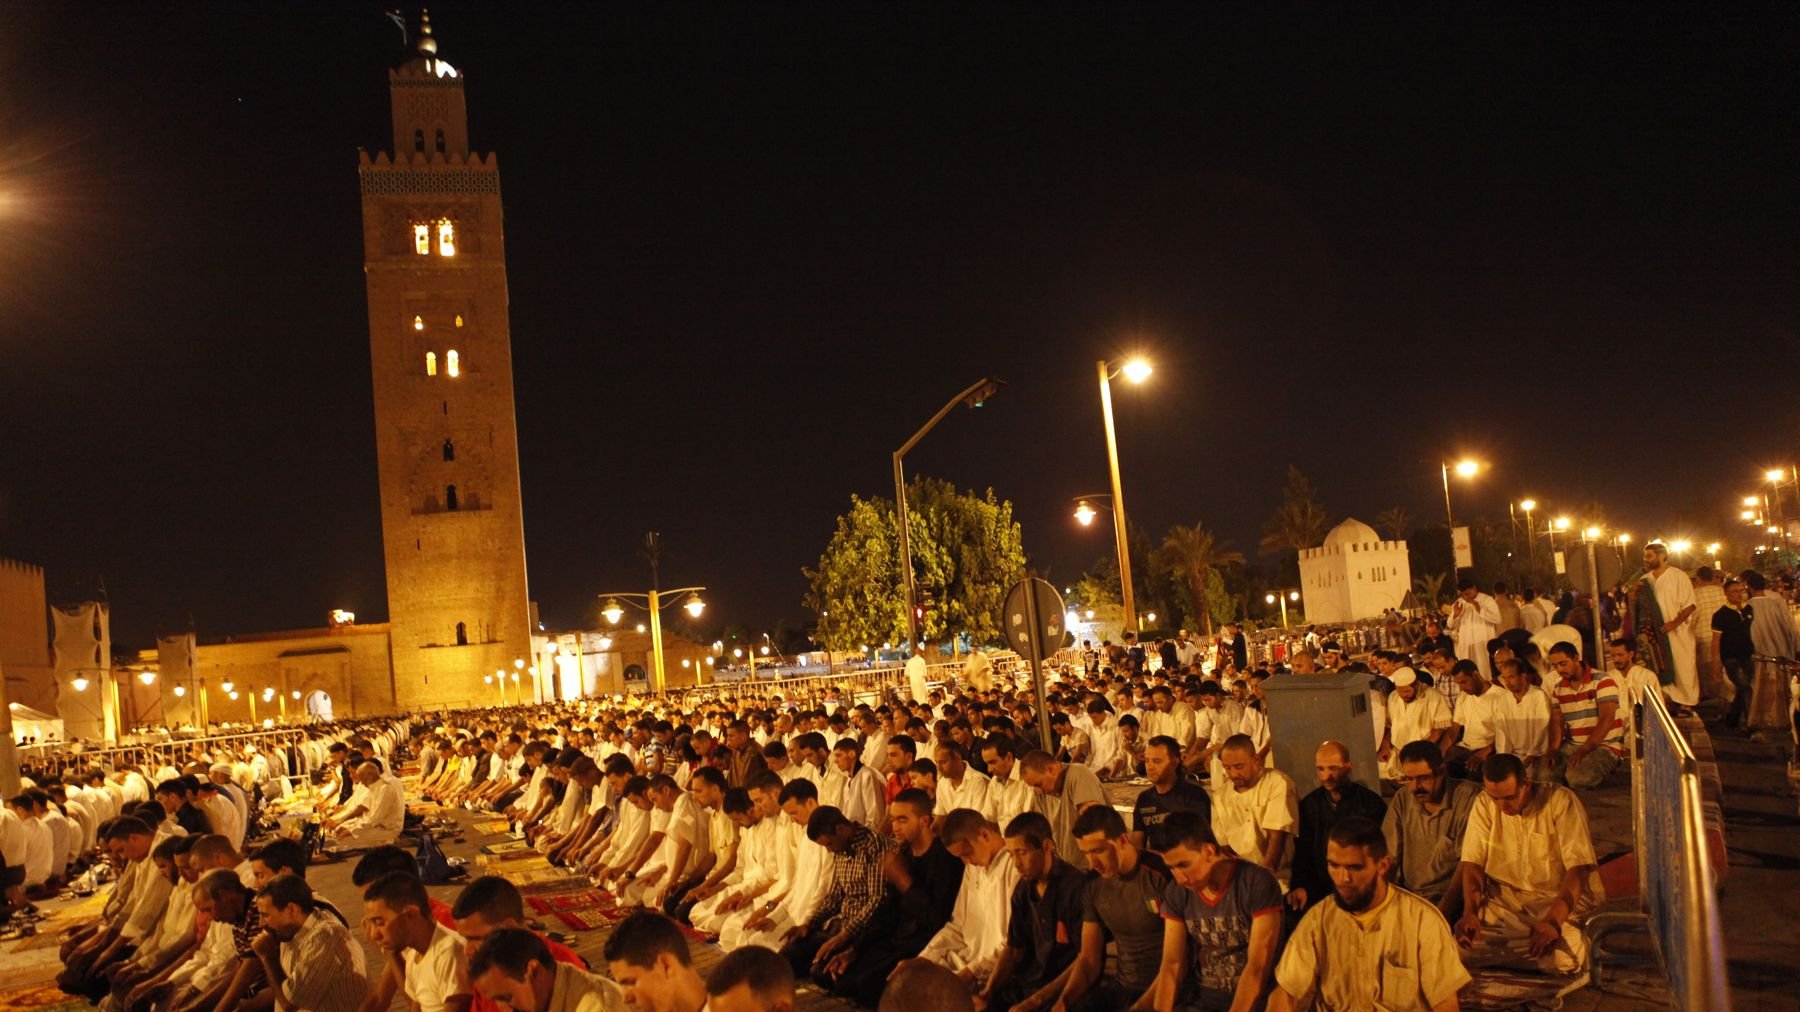 Ville extrêmement touristique, la mosquée de la cité ocre accueille régulièrement des touristes musulmans
